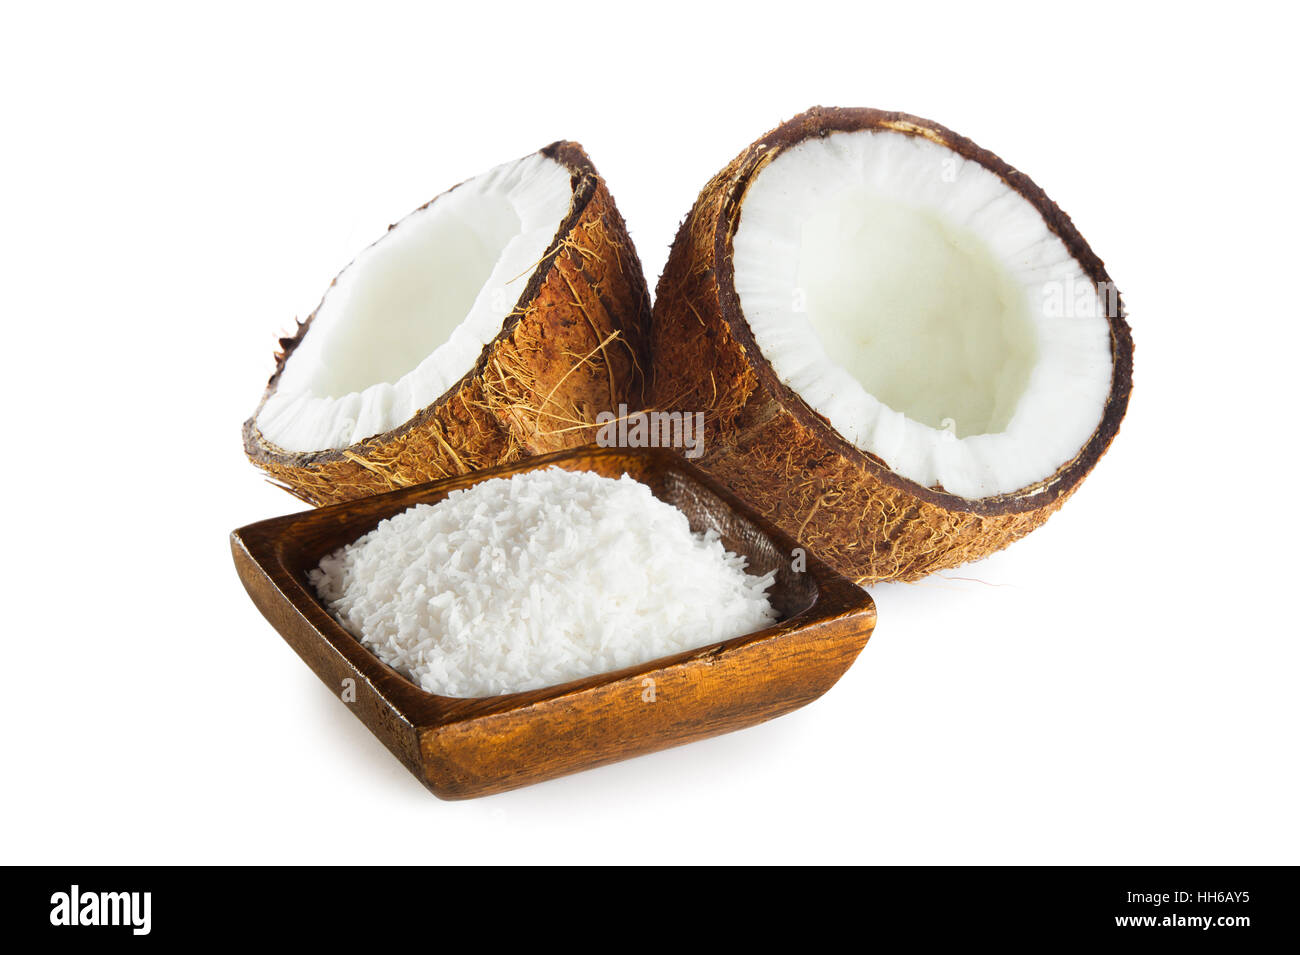 La noix de coco râpée dans le bol en bois isolé sur fond blanc Banque D'Images